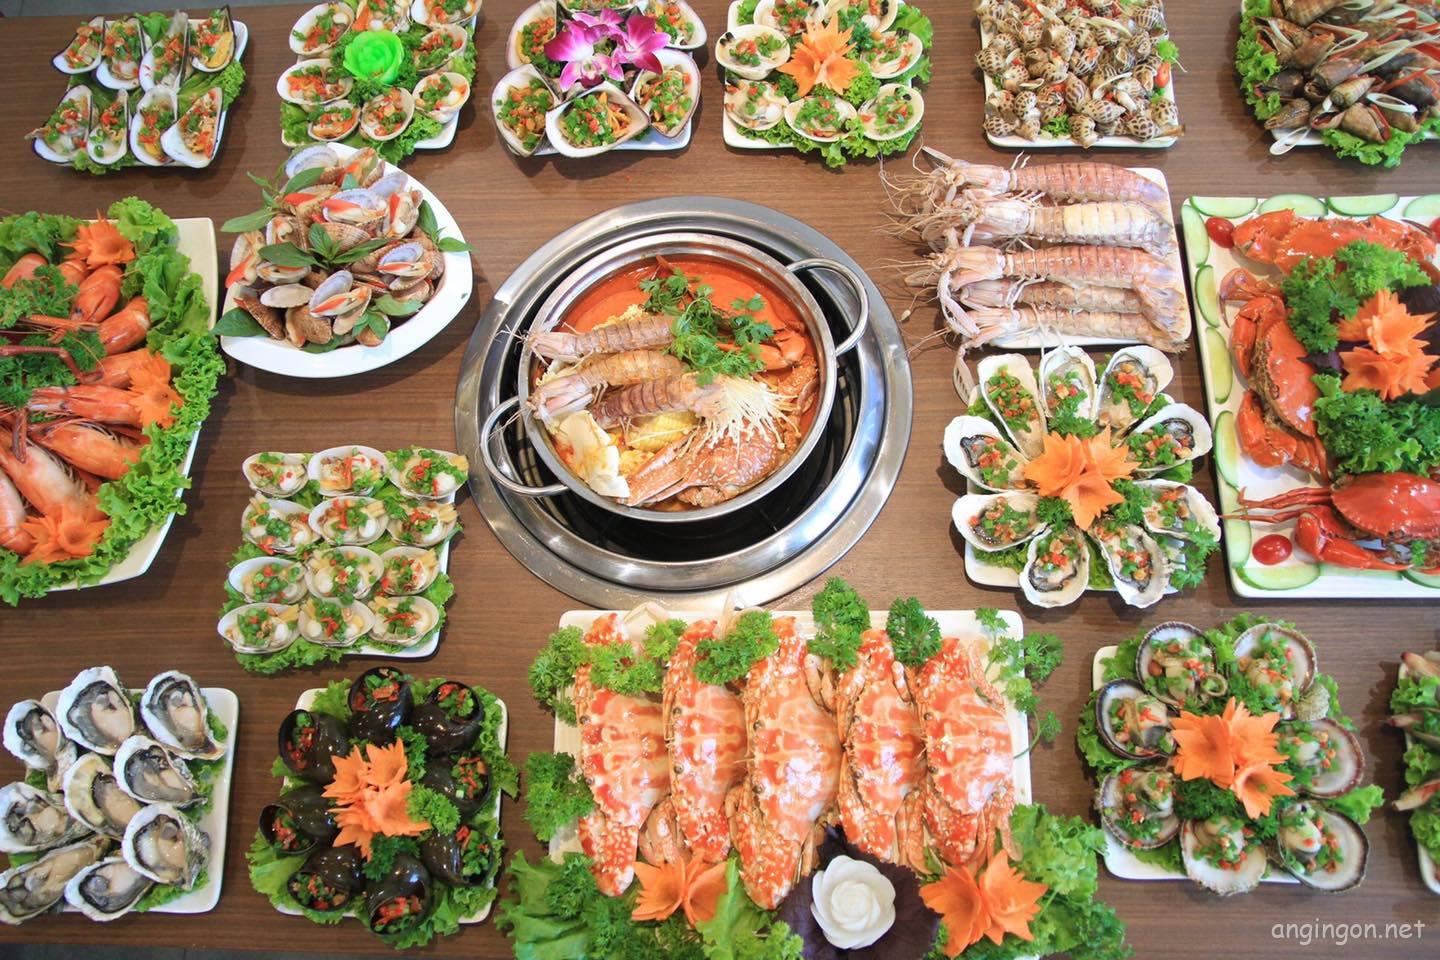 Top 7 quán ăn có khu vui chơi cho bé tại Hà Nội nổi tiếng – Angingon